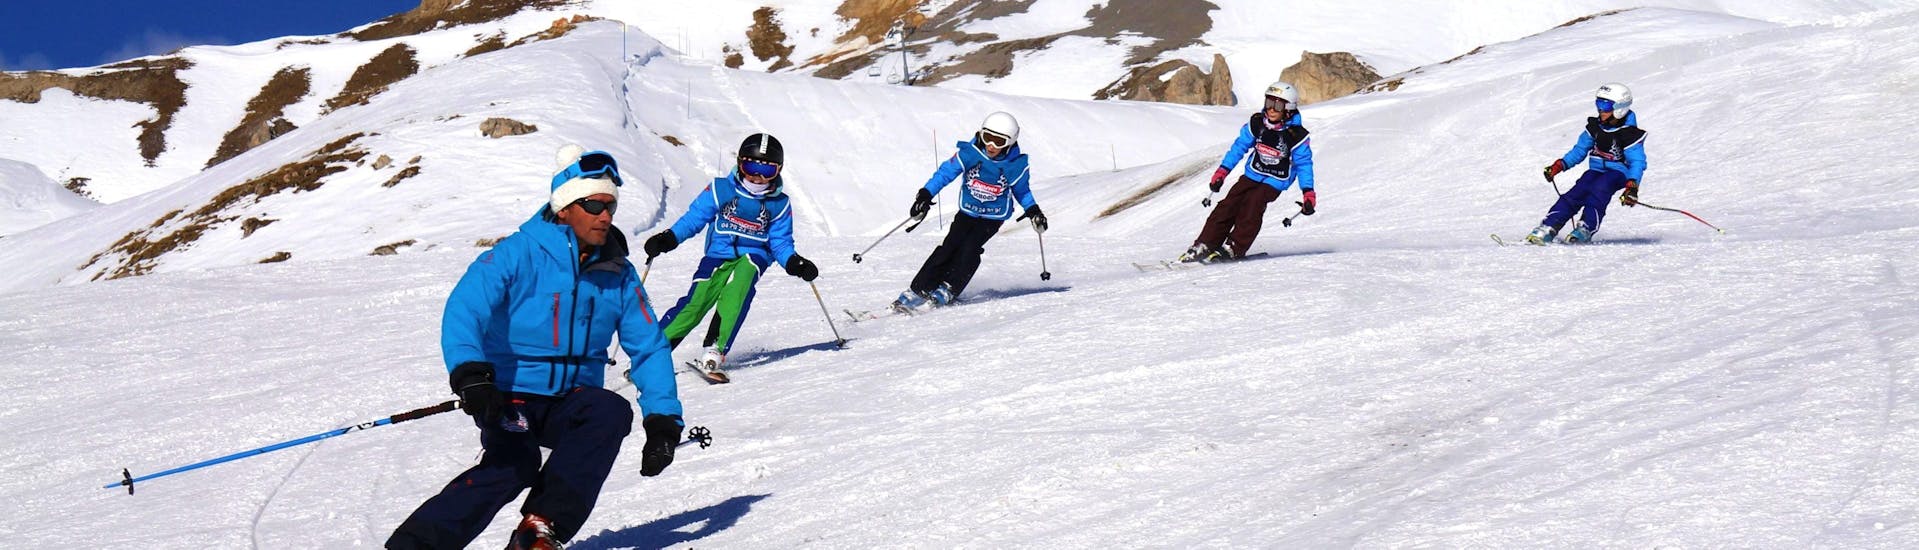 Des jeunes skieurs suivent leur moniteur de ski de l'école de ski Snocool le long d'une piste enneigée pendant leur Cours de ski Enfants "Pop 6" (10-17 ans) - Avancé.